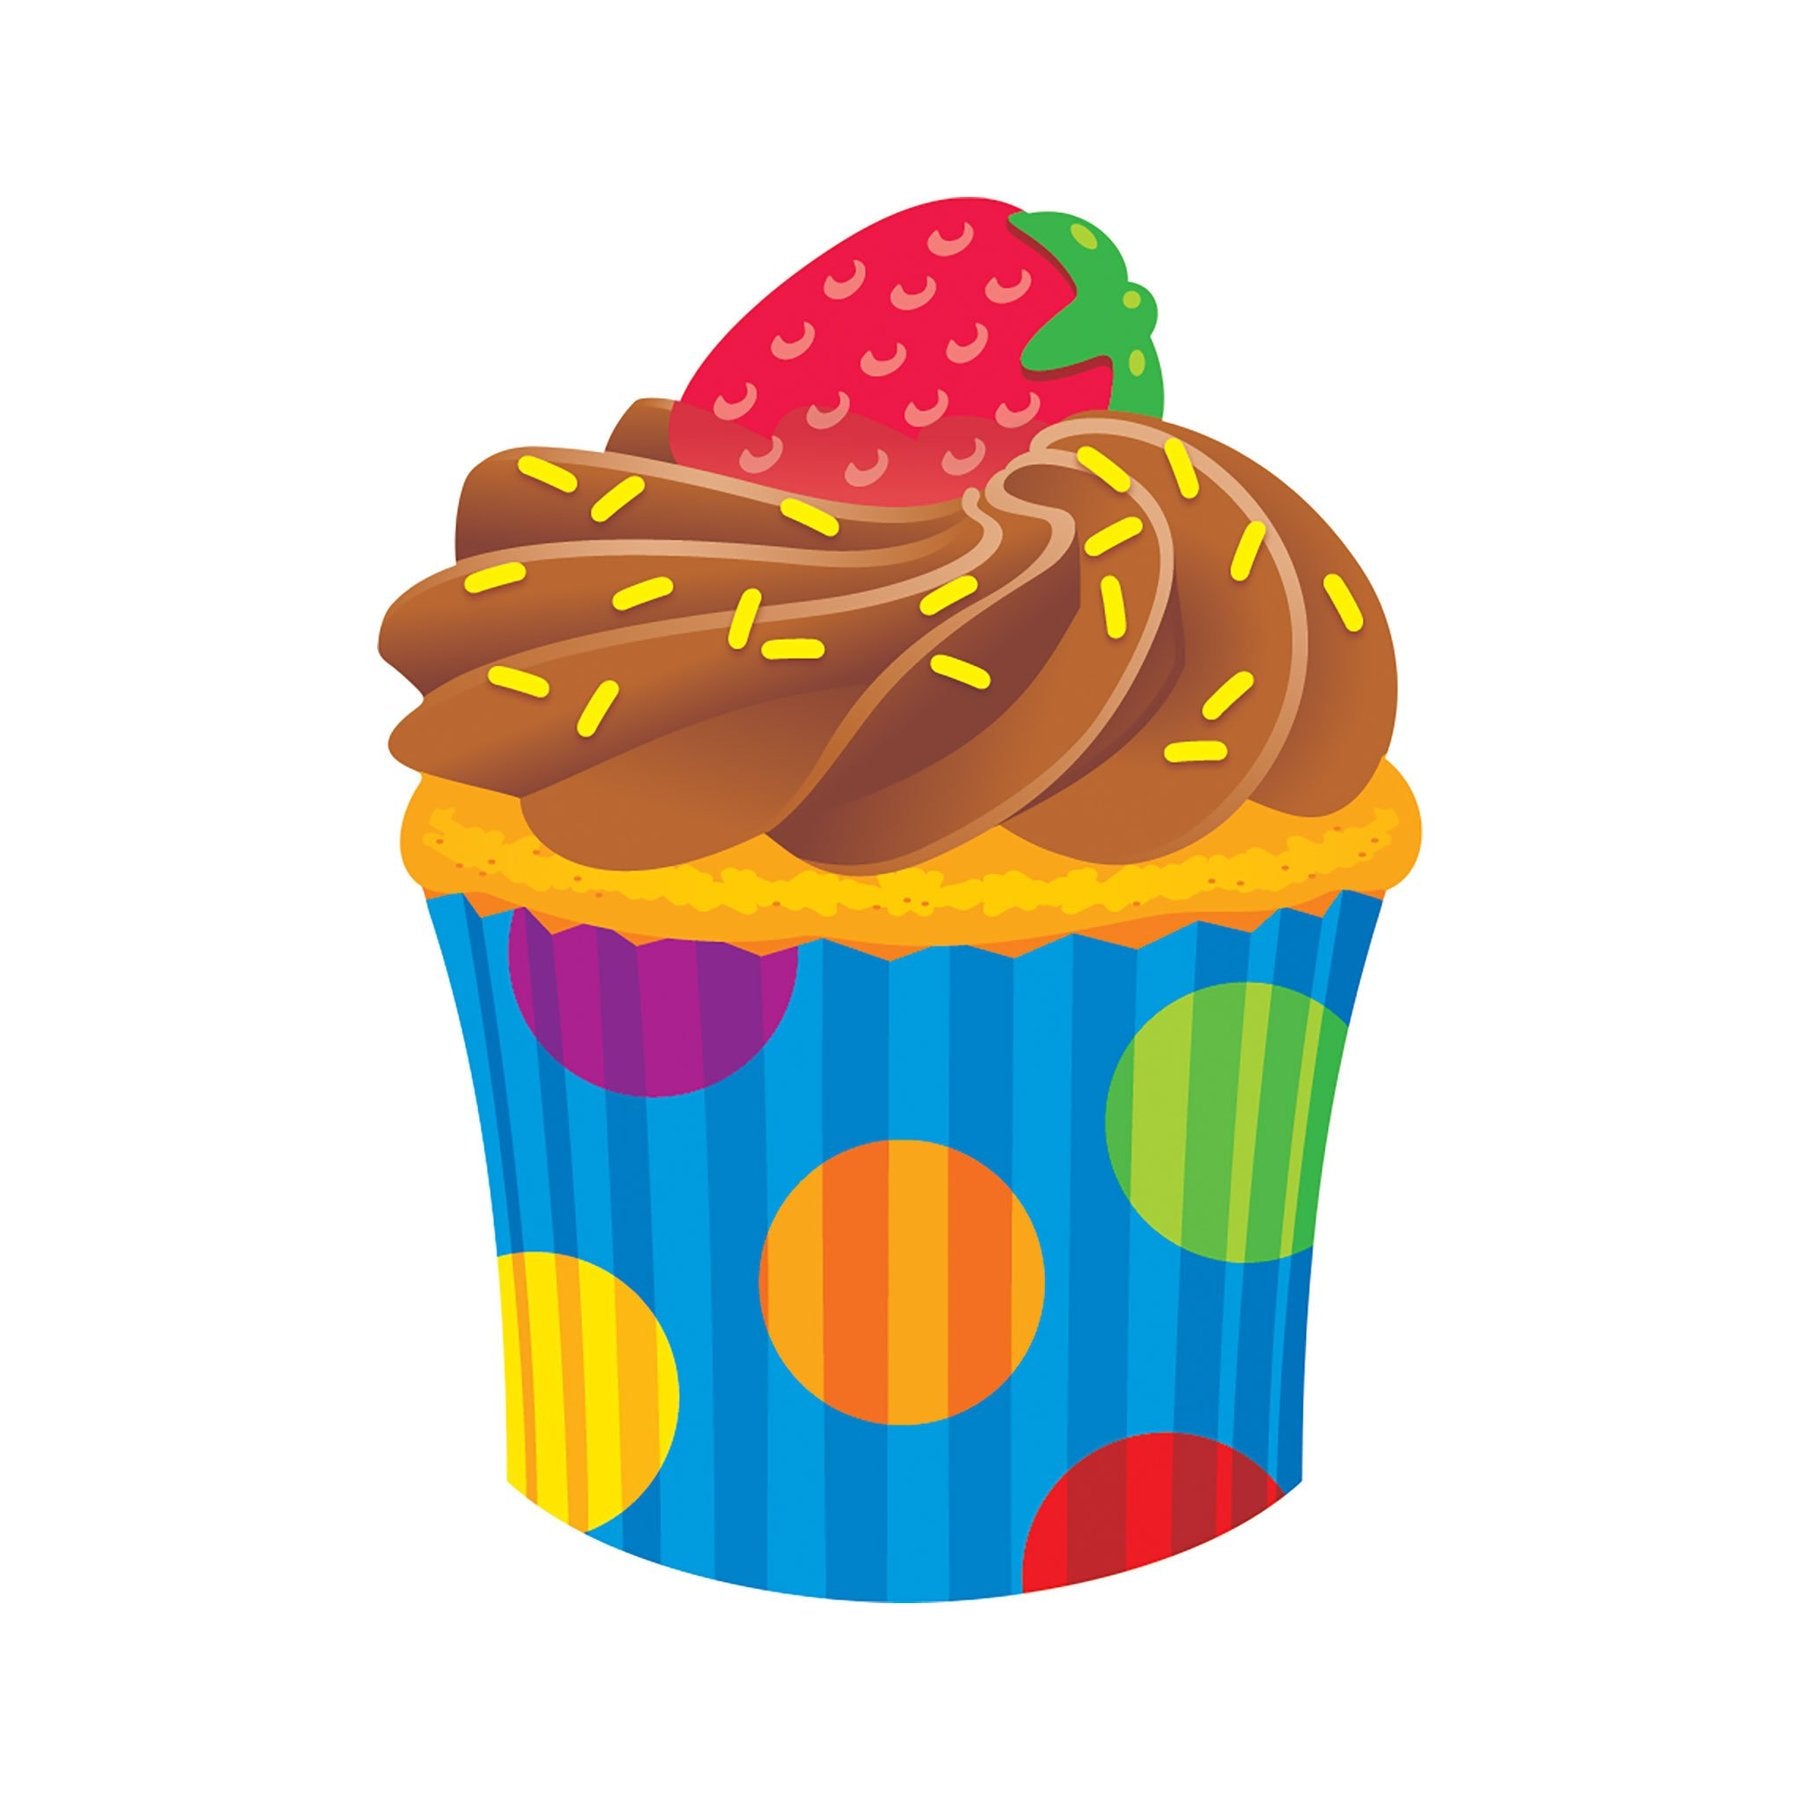 Trend Enterprises Cupcake The Bake Shop Mini Accents